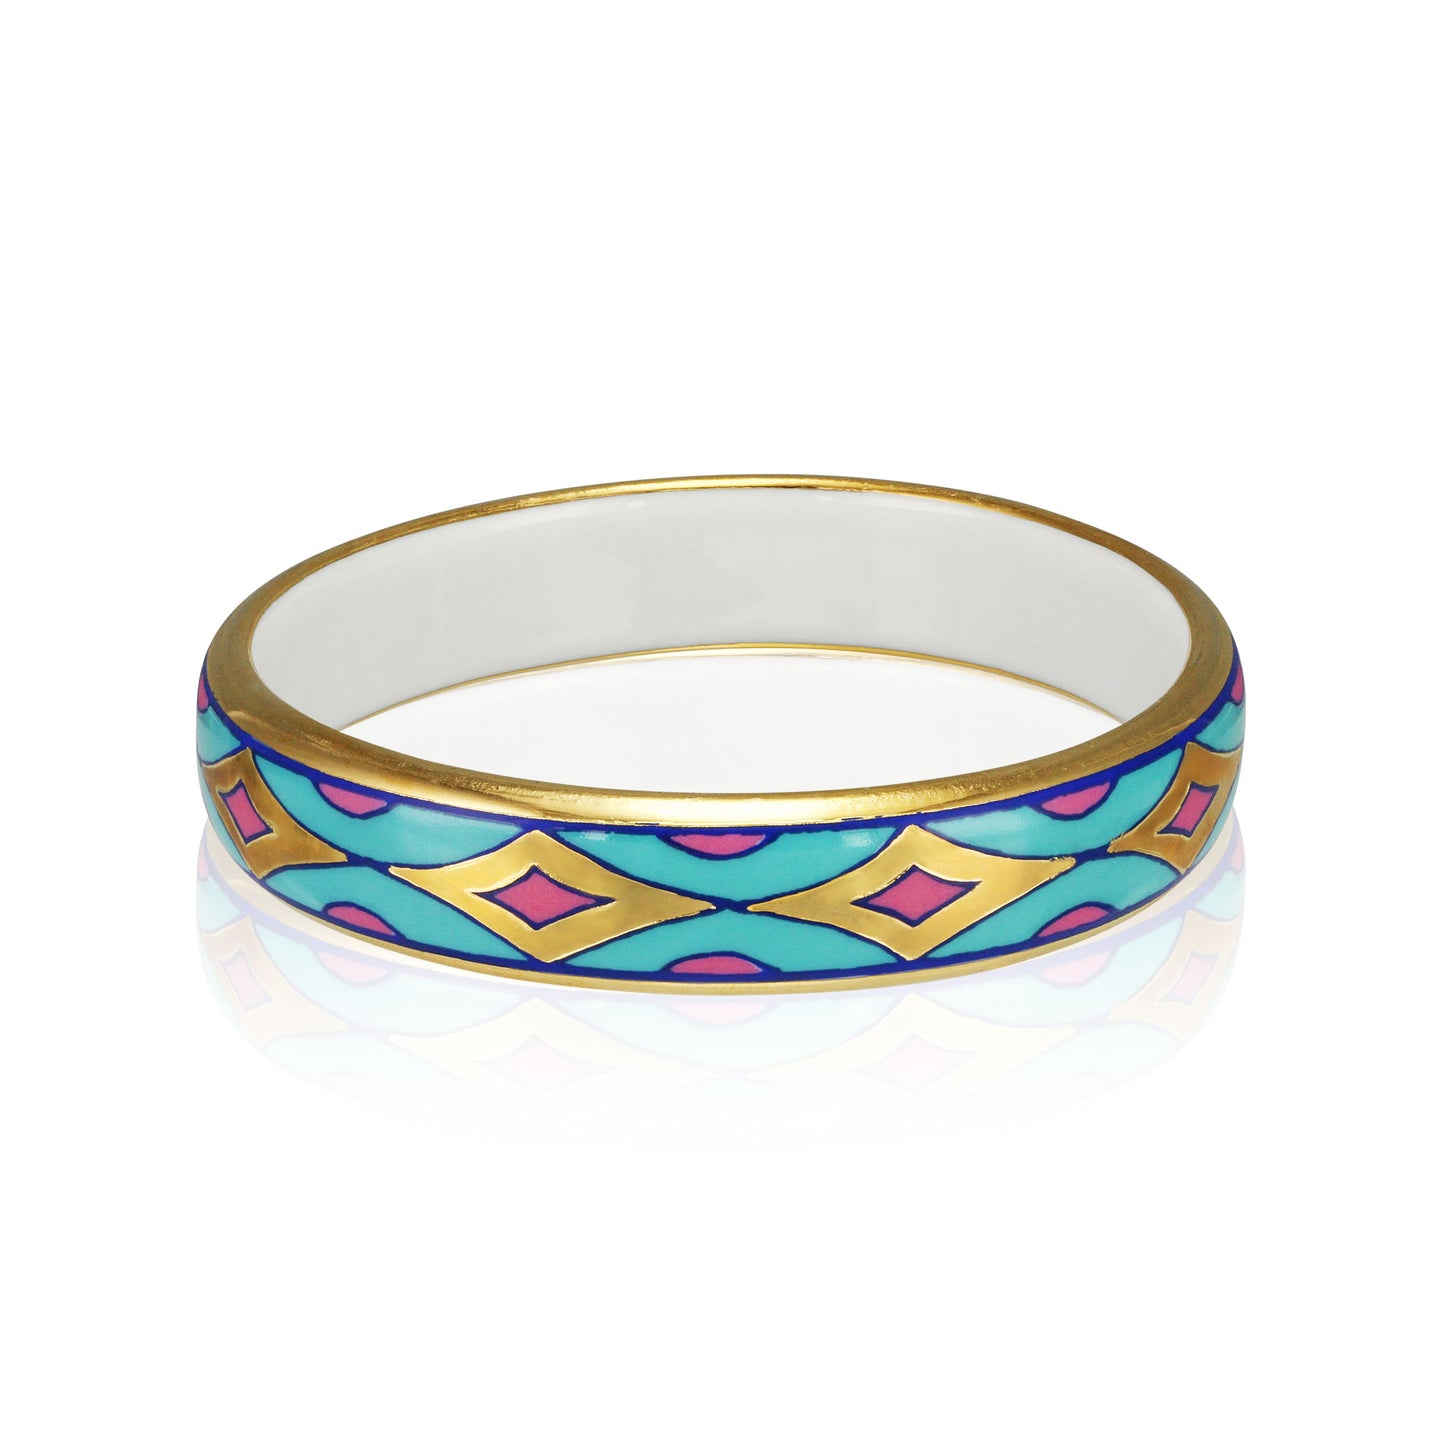 GOLD OF DESERT gold plated blue/pink slim fine porcelain bracelet